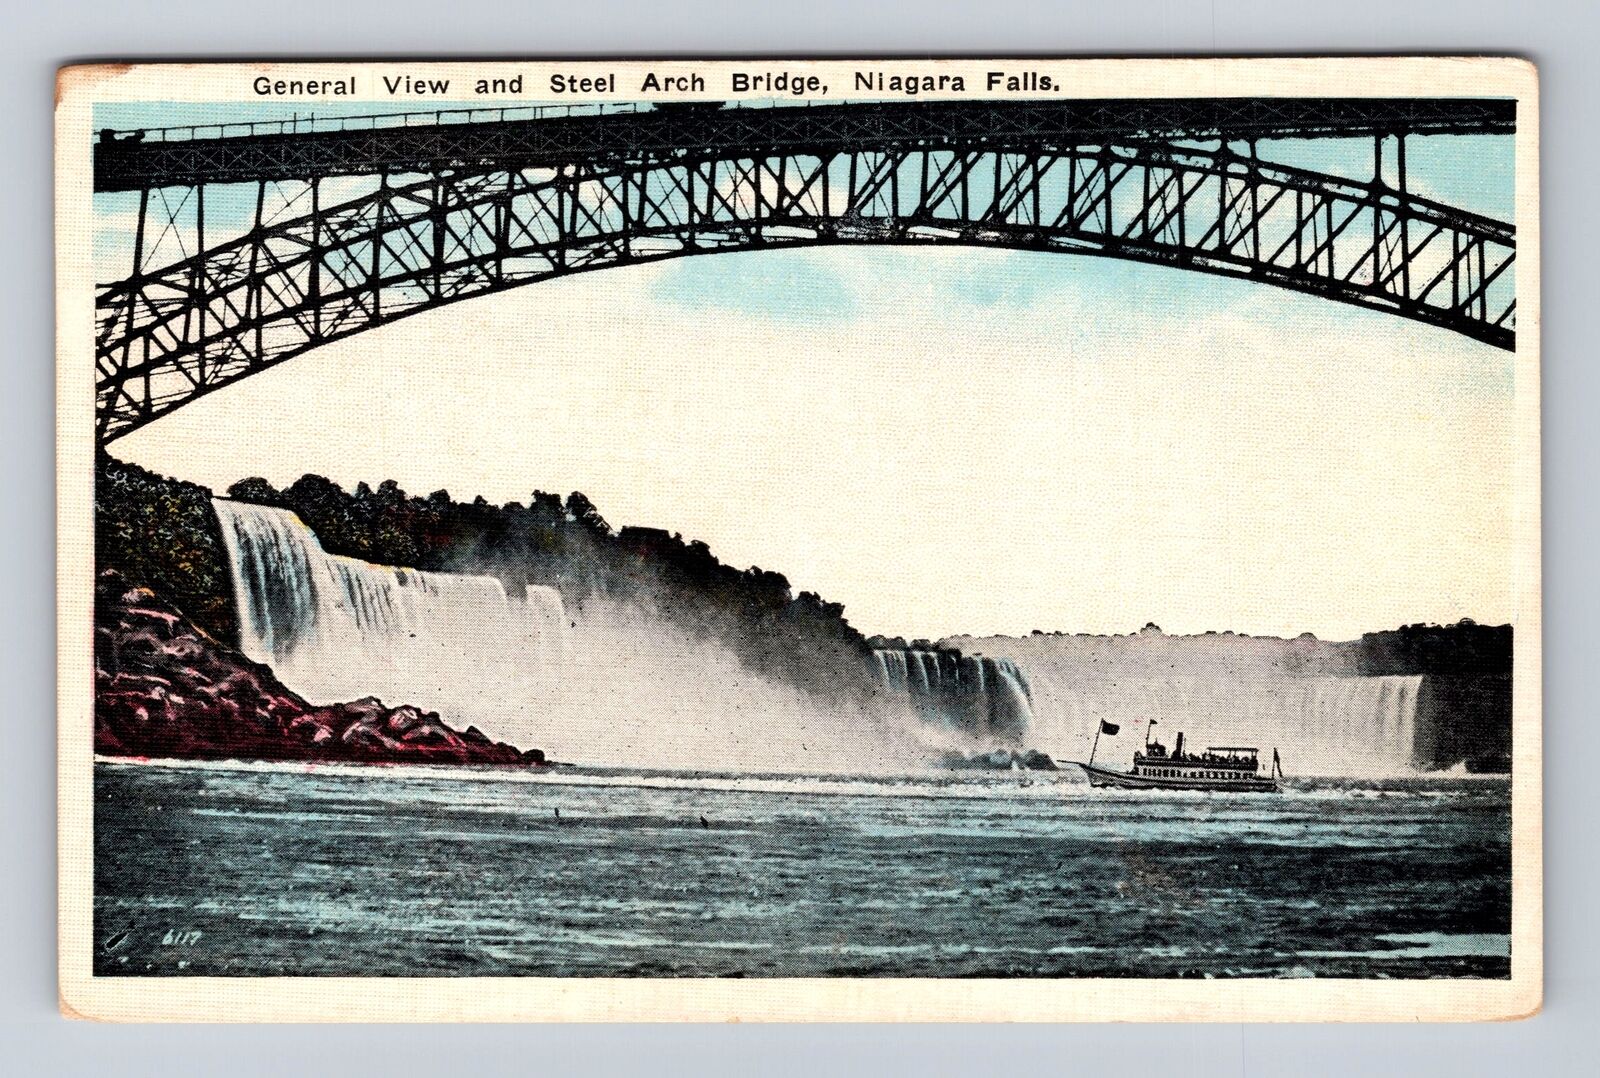 Niagara Falls Ontario-Canada, General View, Steel Arch Bridge, Vintage Postcard